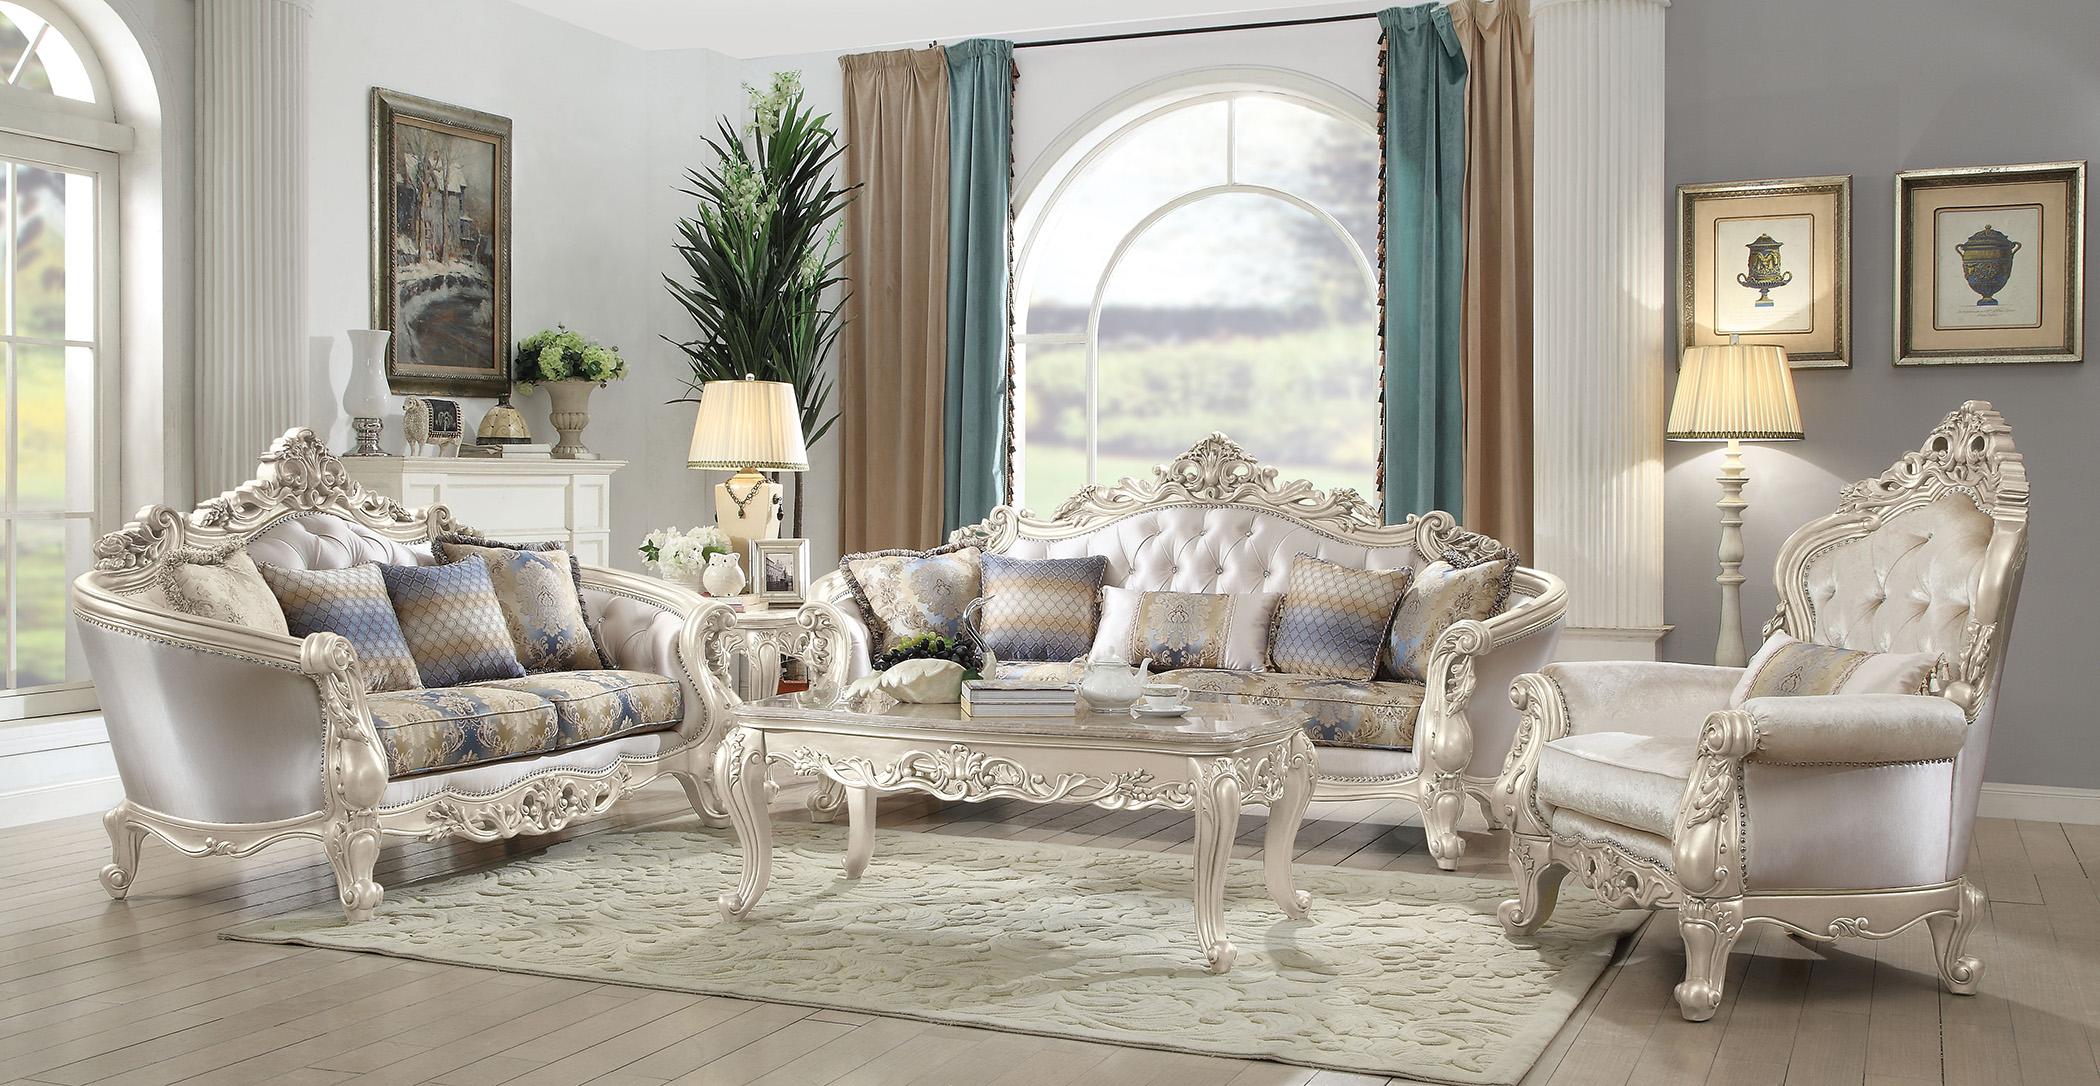 

    
Luxury Sofa Set 5 Pcs Gorsedd-52440 Antique White Cream Fabric Acme Traditional
